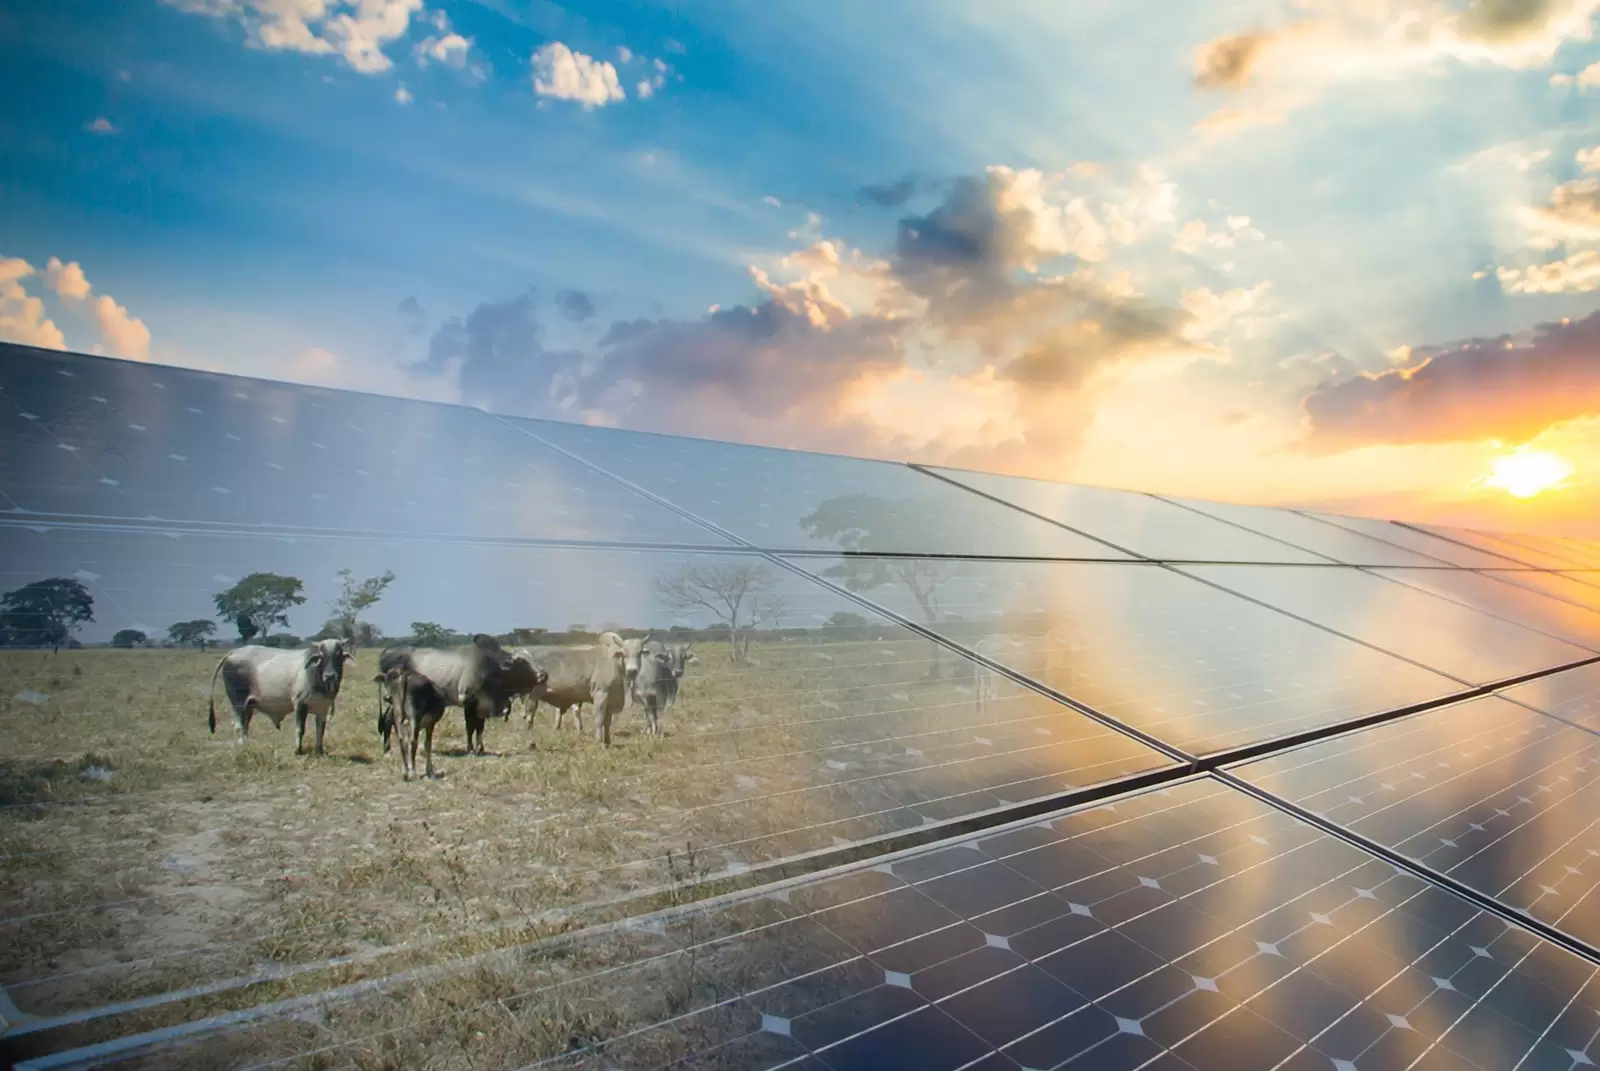 Puntillos con paneles solares para combatir sequía en sabanas de Arauca